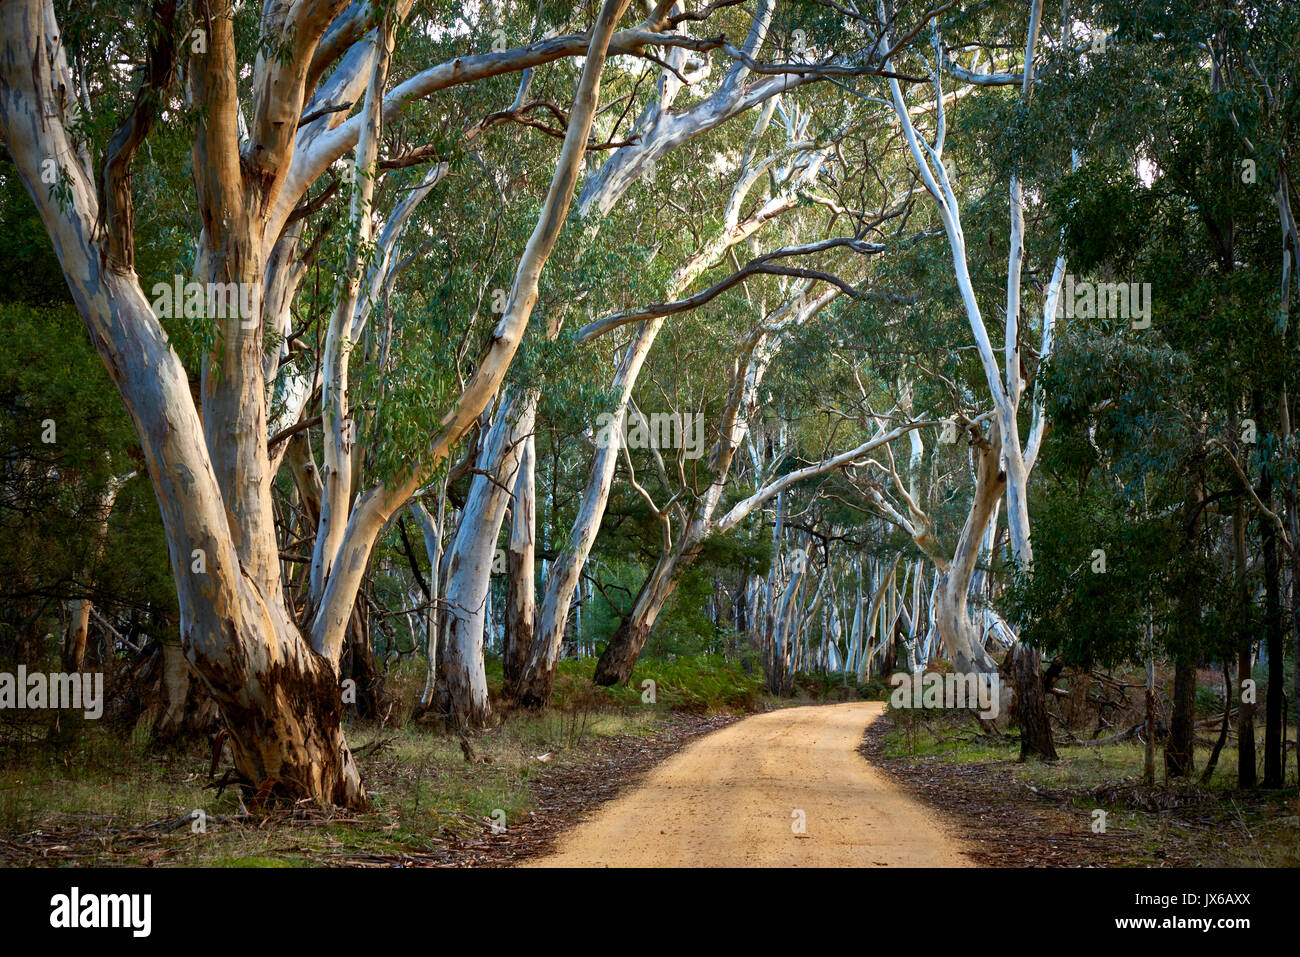 Winding road près de la petite ville touristique de Halls Gap. Région Grampians de Victoria, en Australie. Banque D'Images